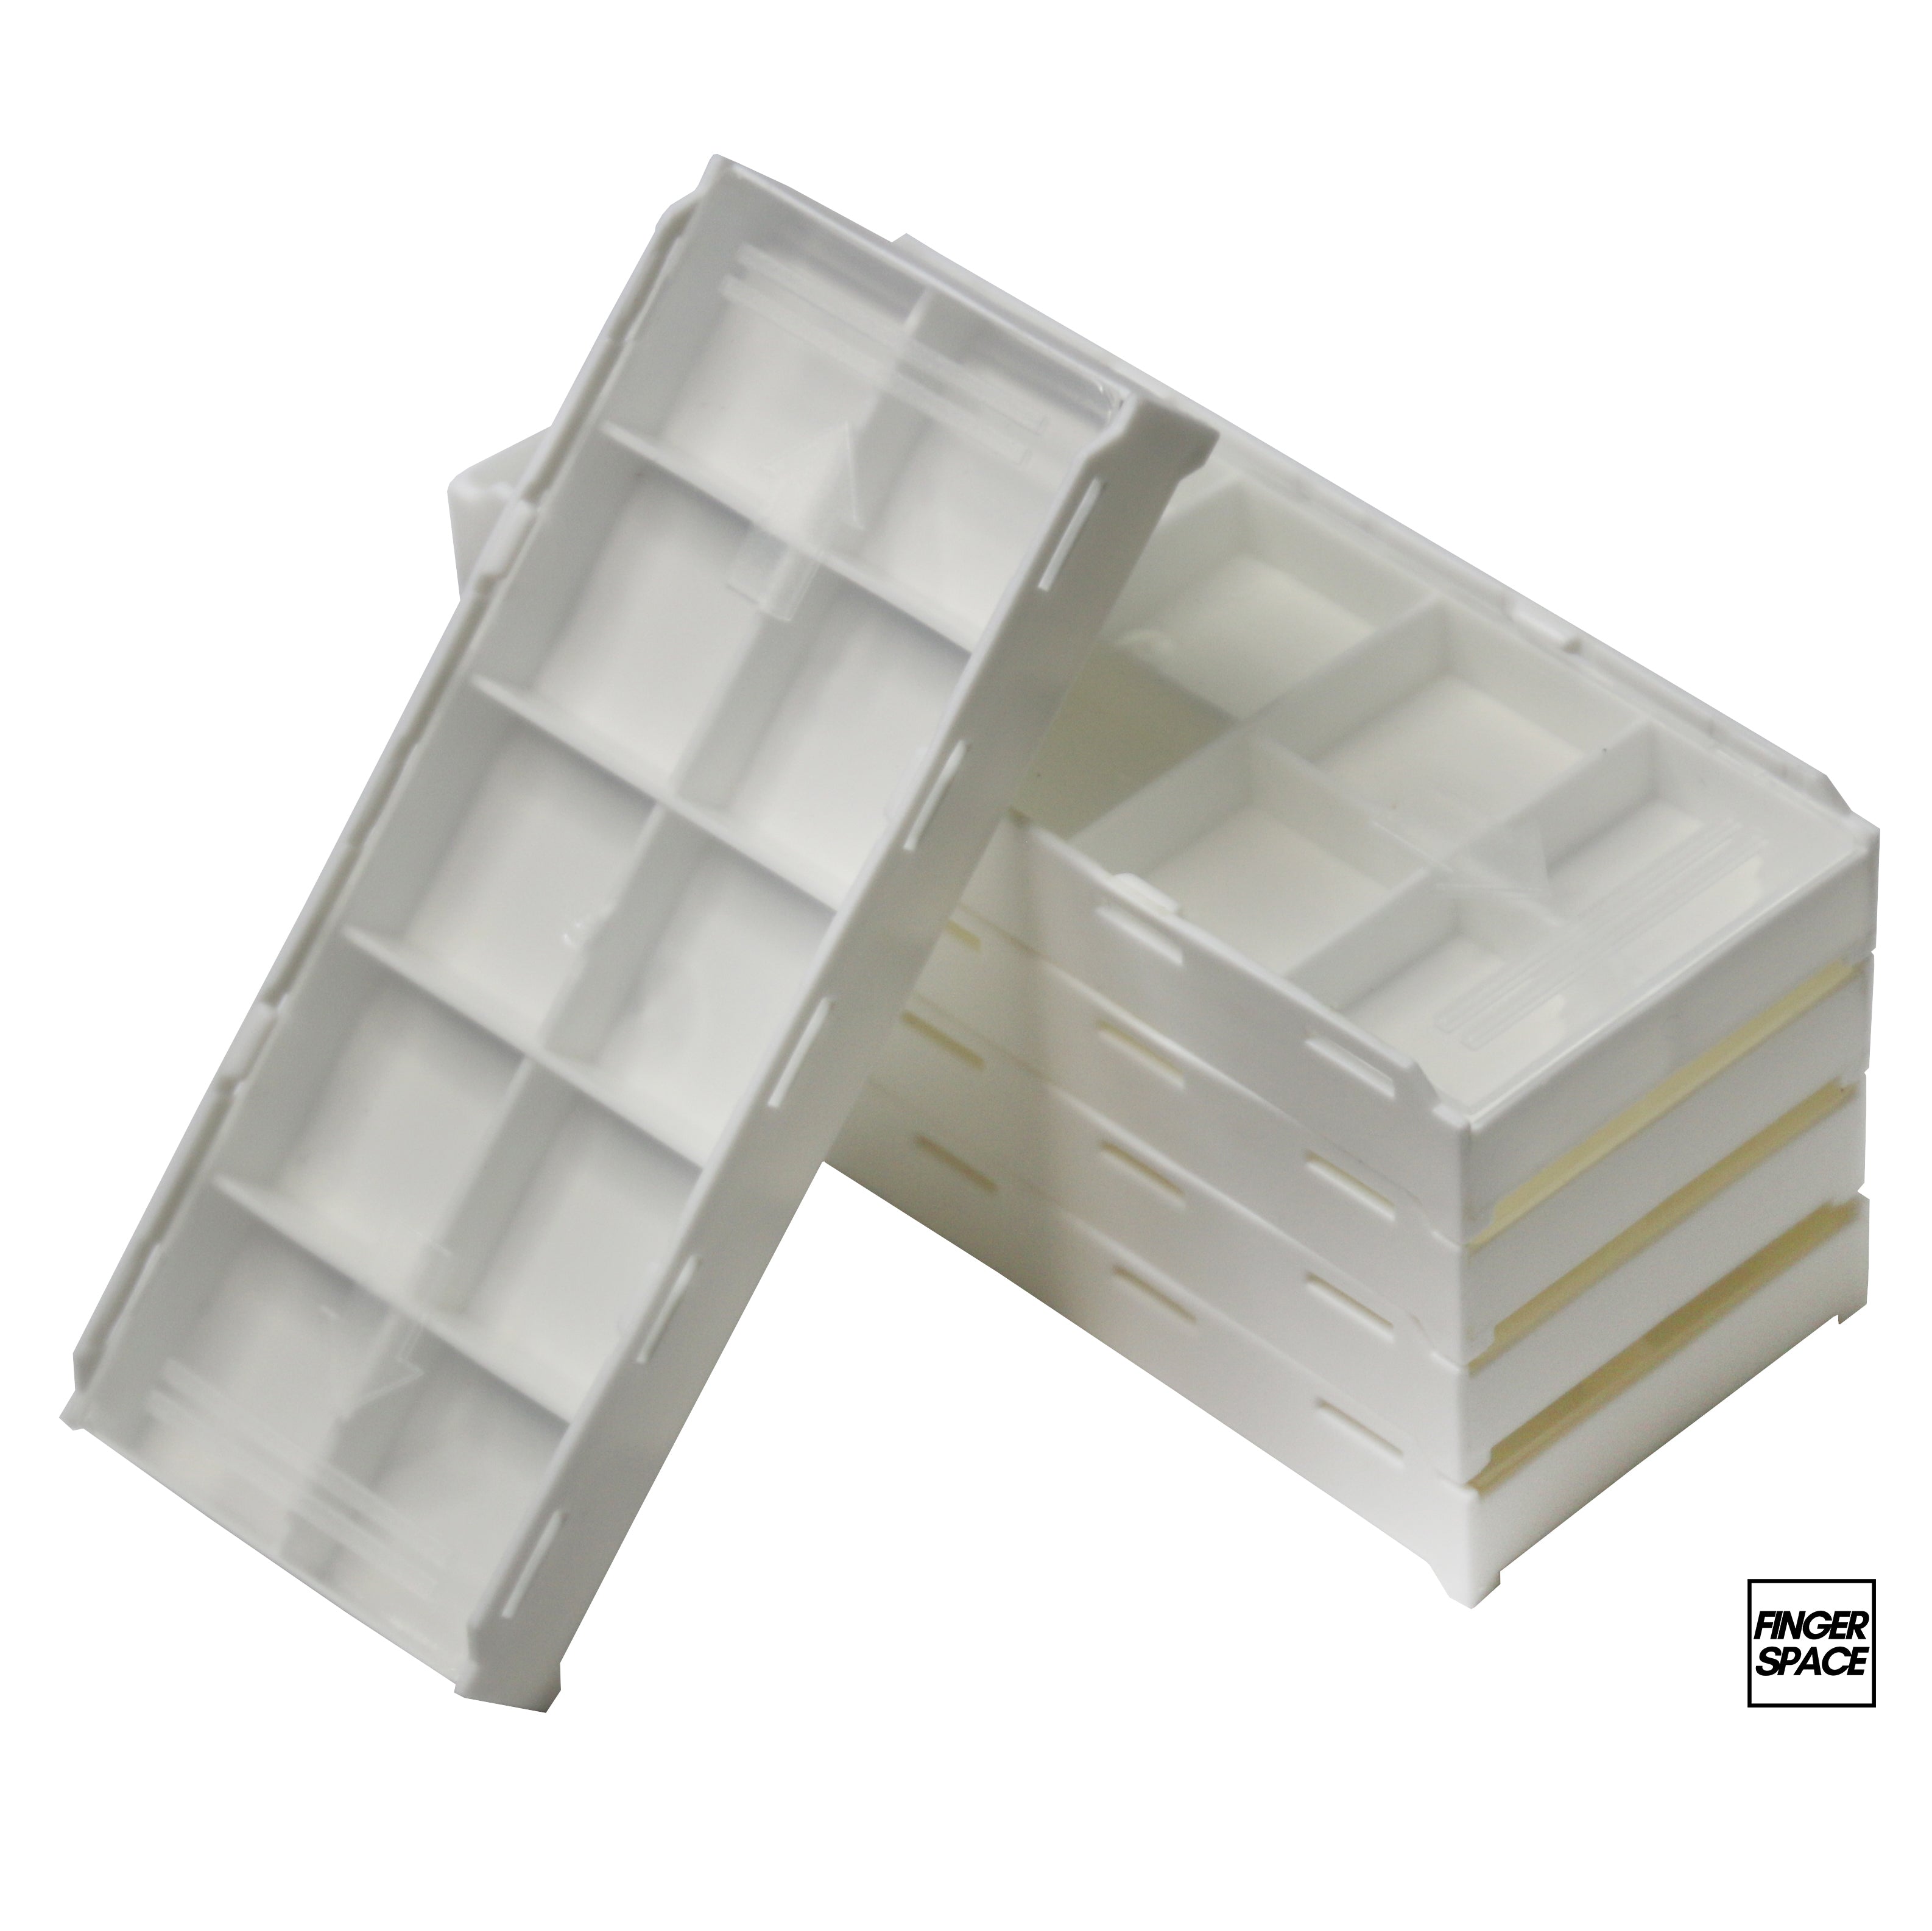 White "Space Case" - Modular Stacking Storage Box